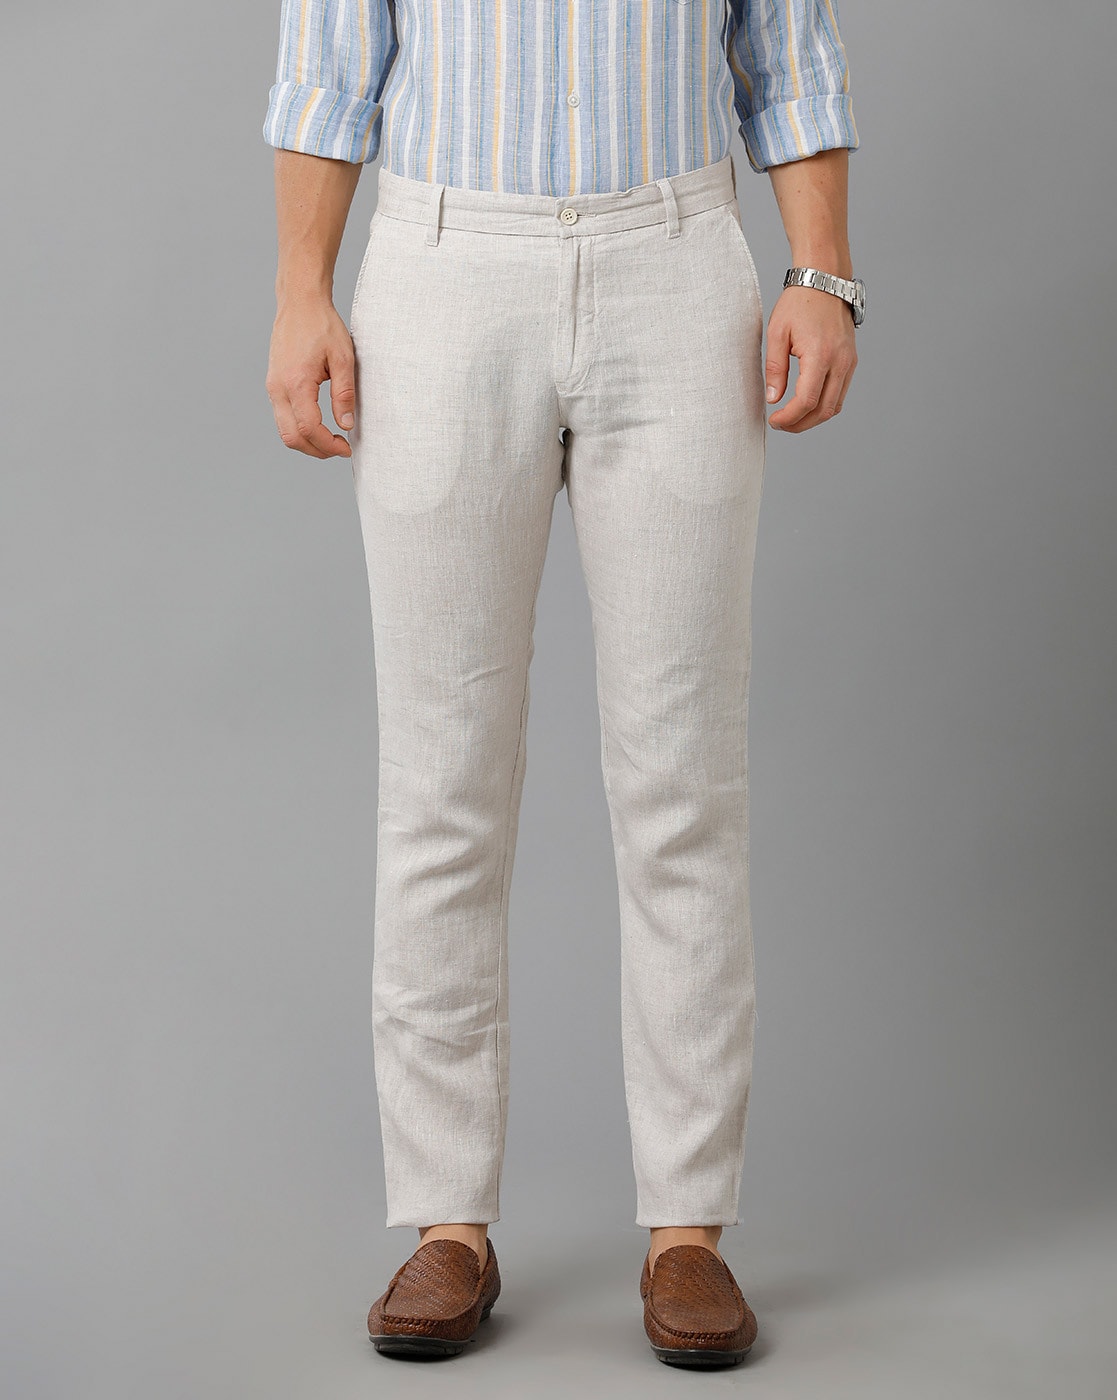 Buy Beige Trousers  Pants for Men by LINEN CLUB Online  Ajiocom